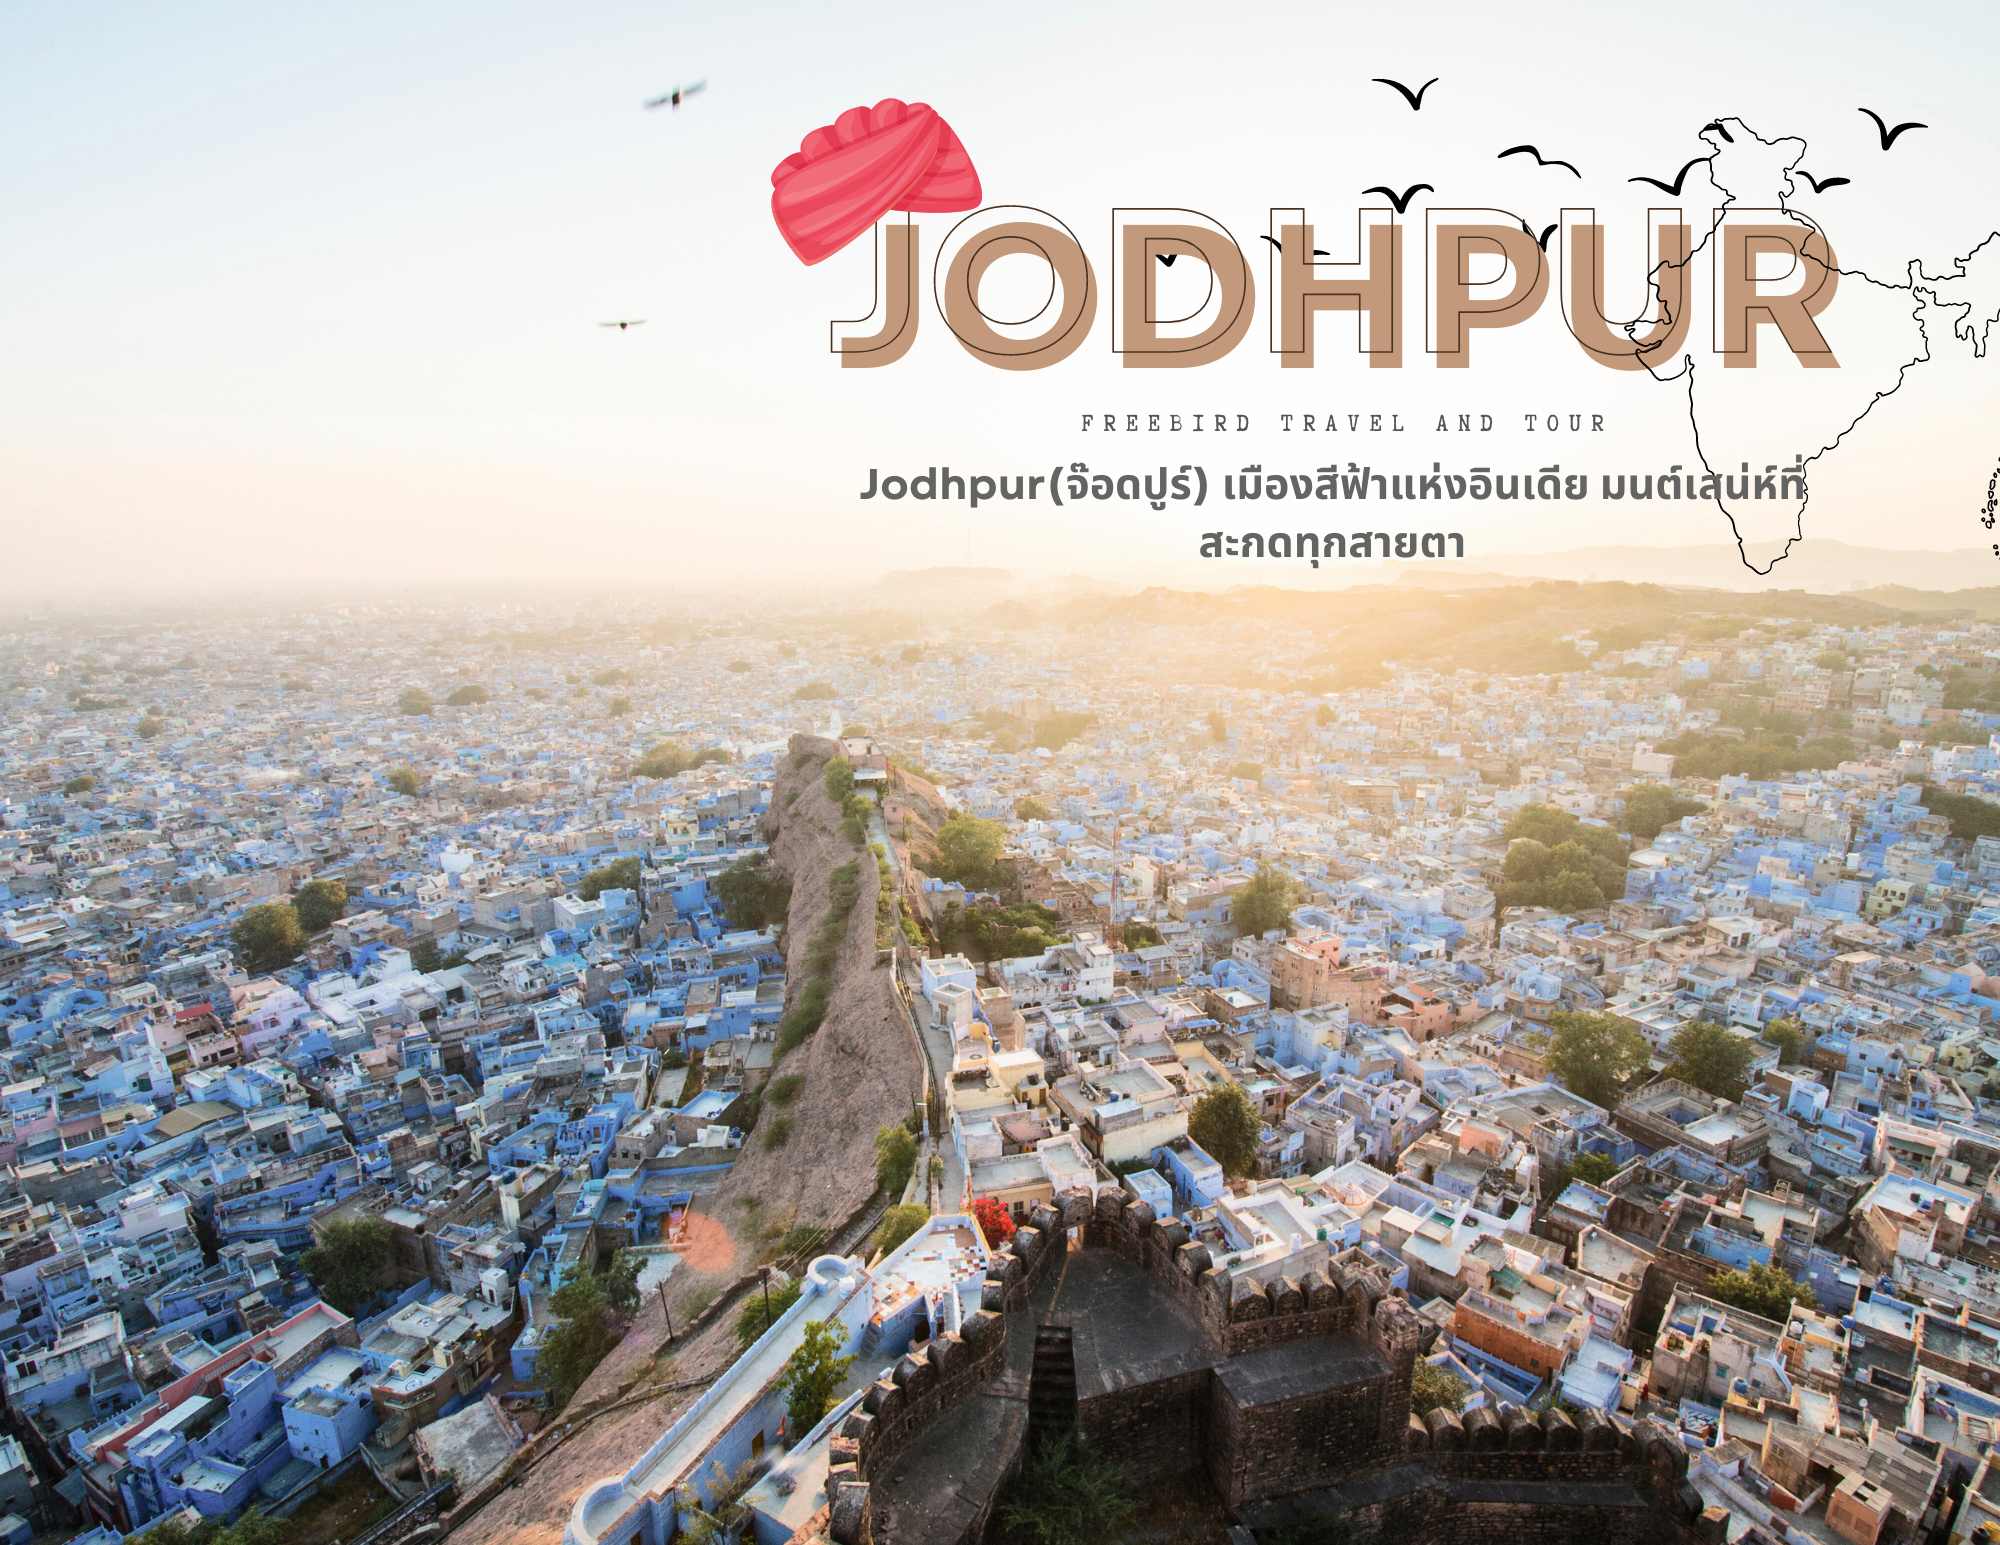 jodhpur-india-freebirdtour